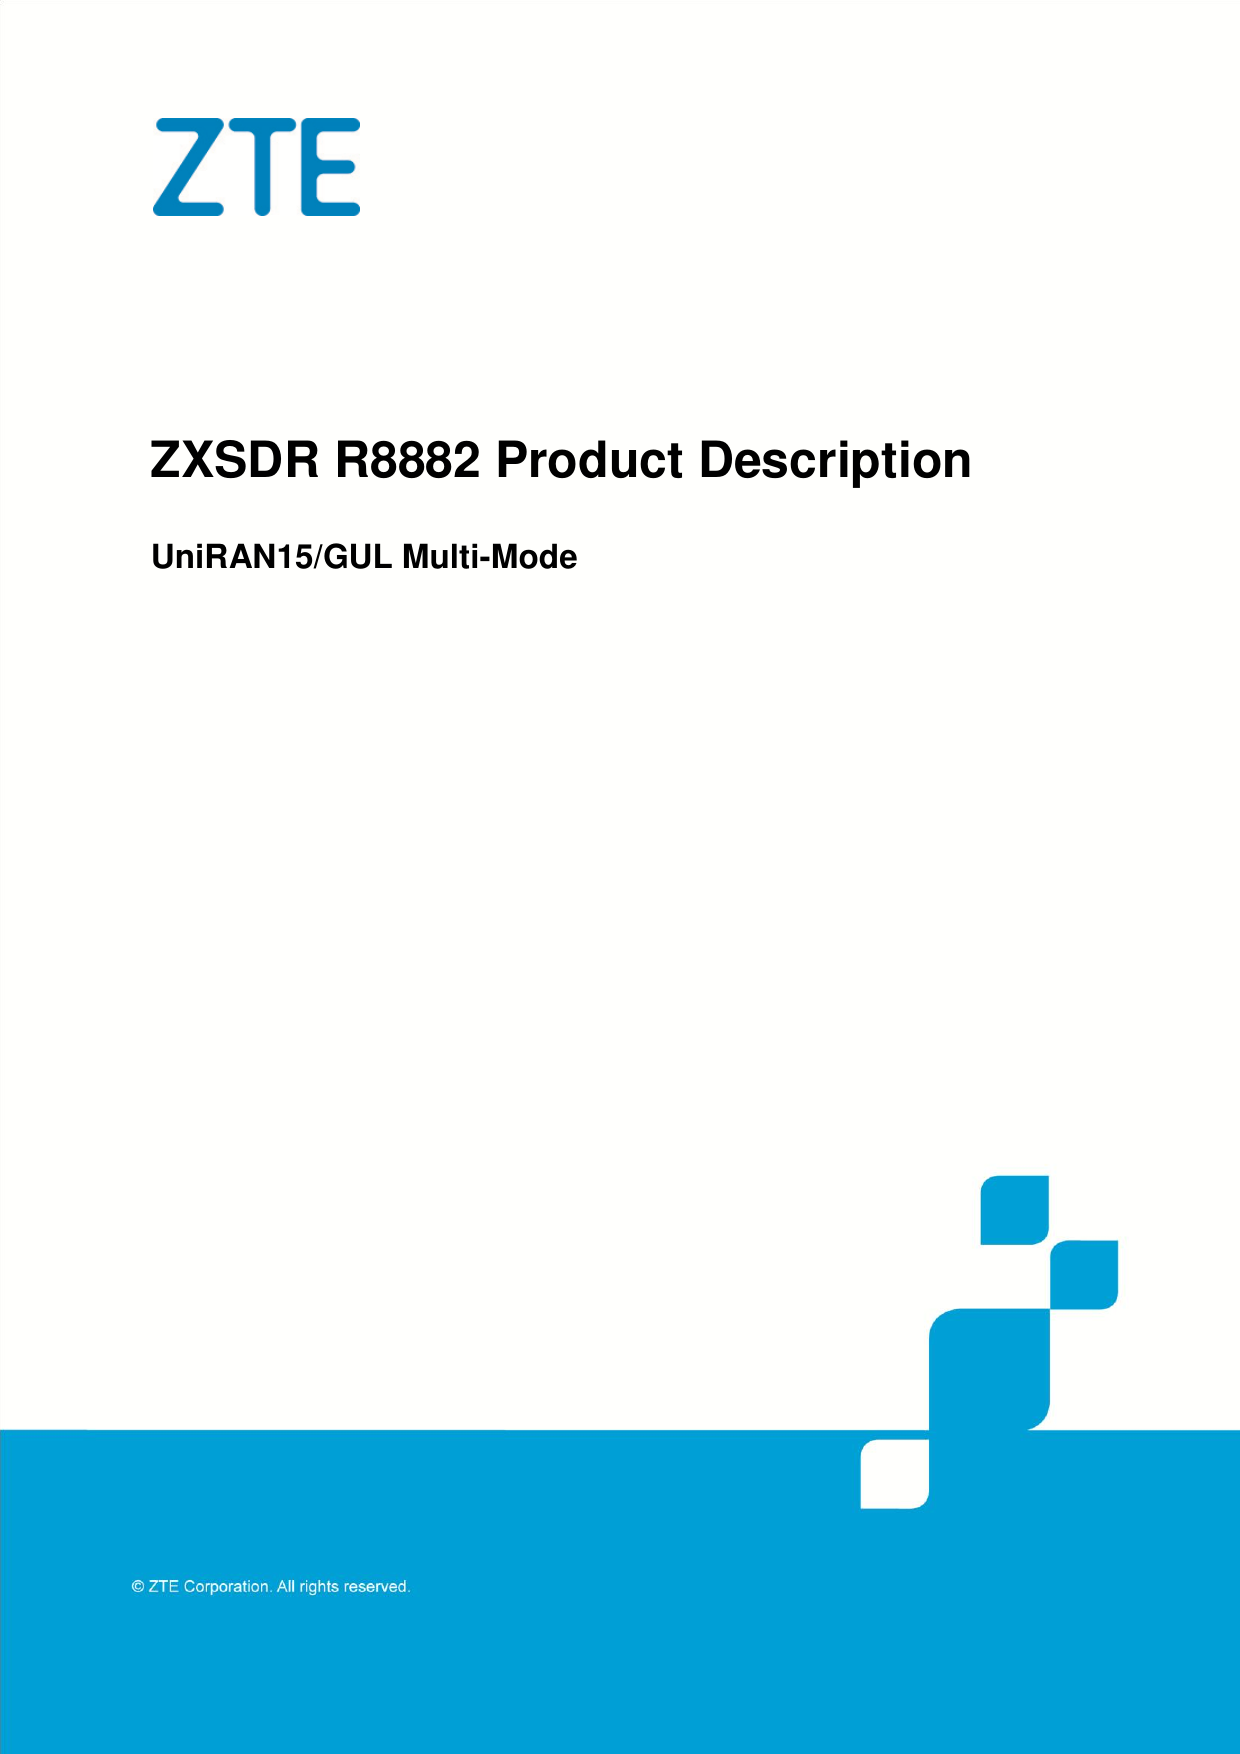    ZXSDR R8882 Product Description UniRAN15/GUL Multi-Mode  